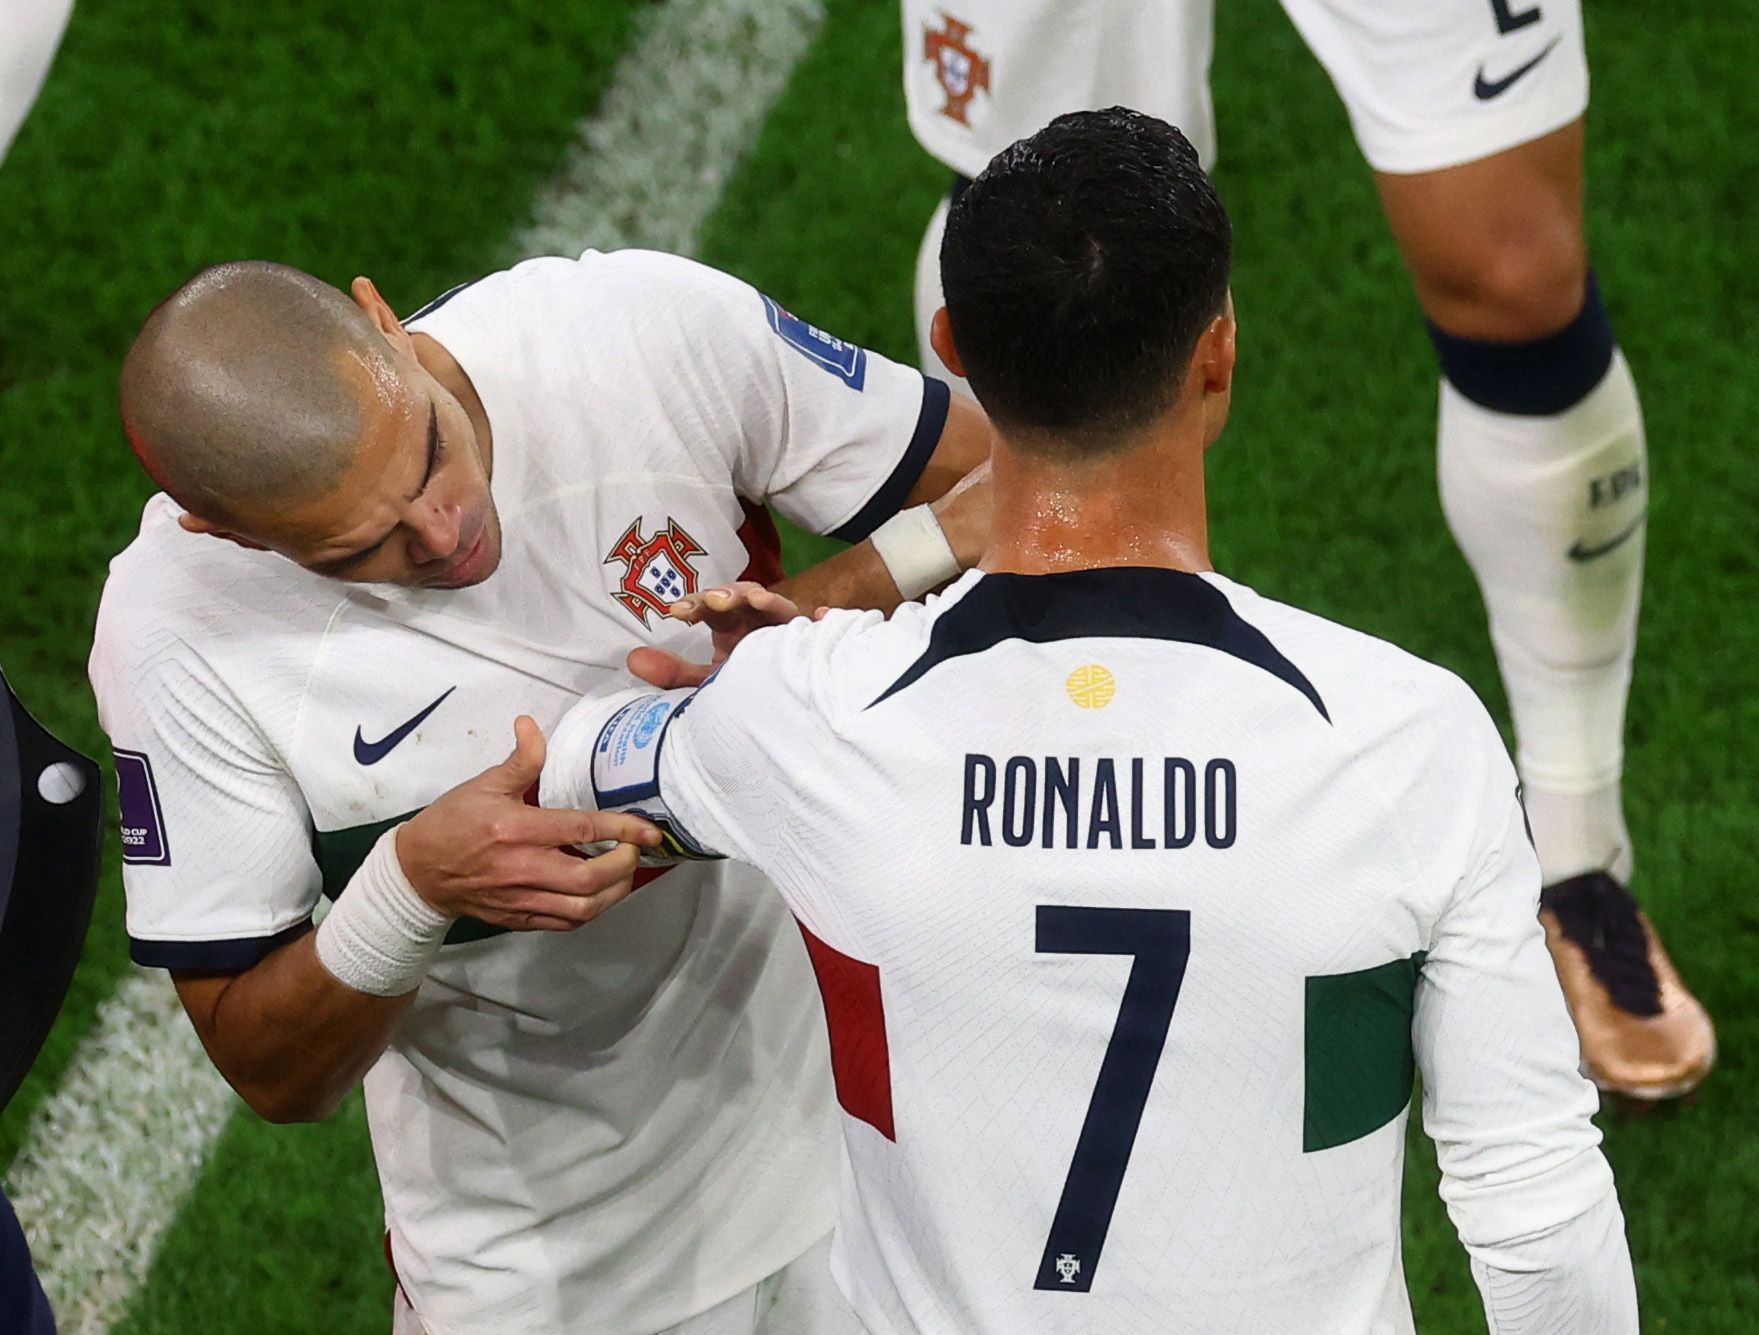 Cristiano Ronaldo přebírá od Pepeho kapitánskou pásku ve čtvrtfinále MS 2022 Maroko - Portugalsko